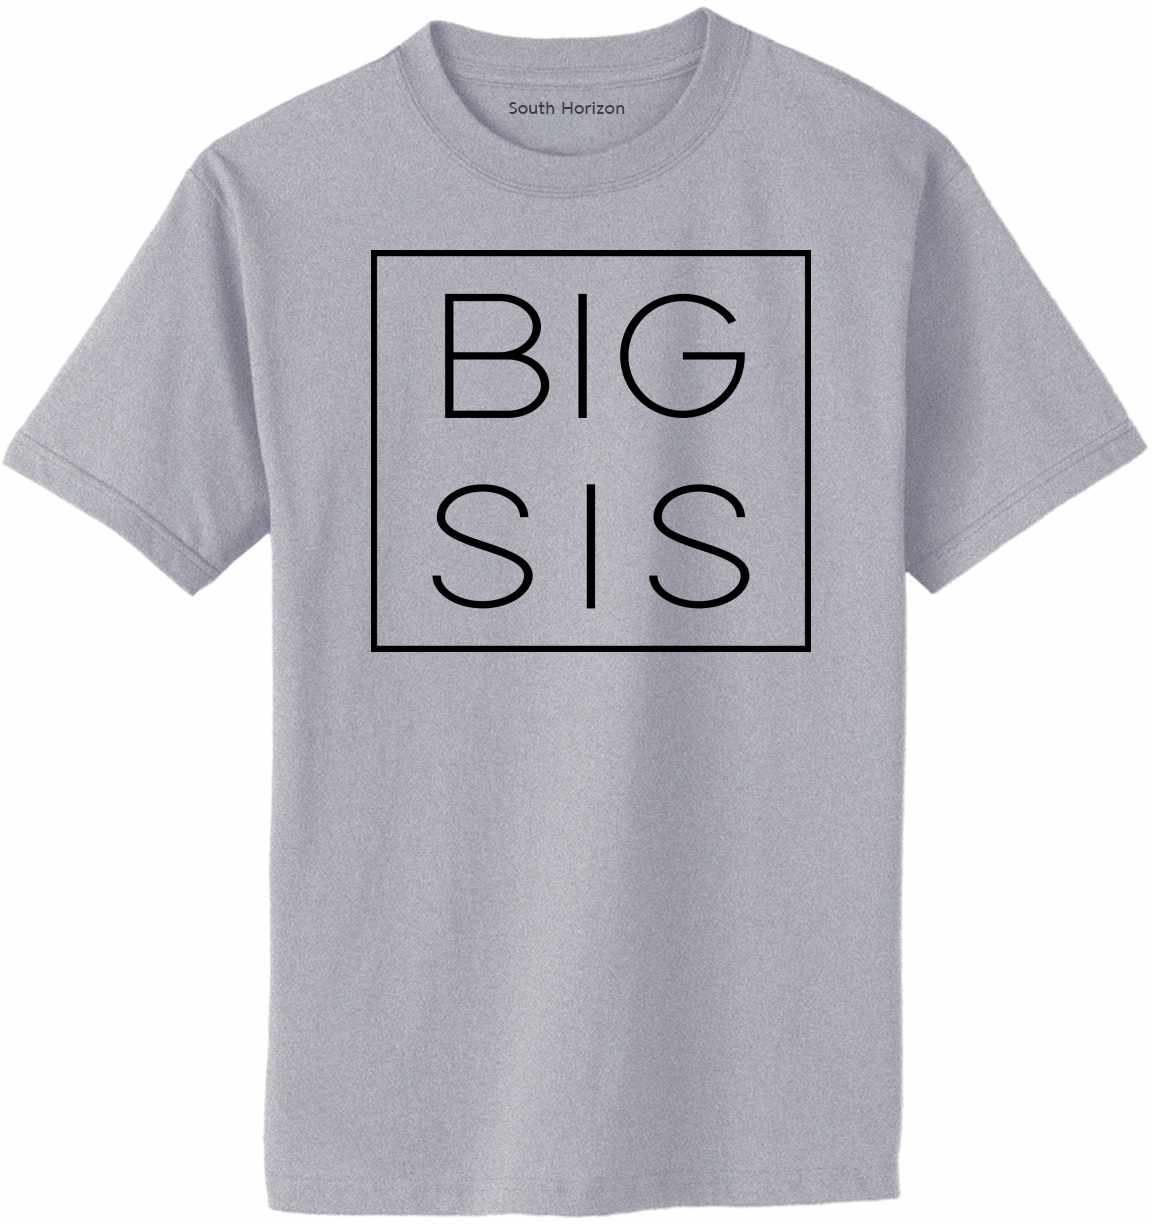 Big Sis - Big Sister Box on Adult T-Shirt (#1250-1)